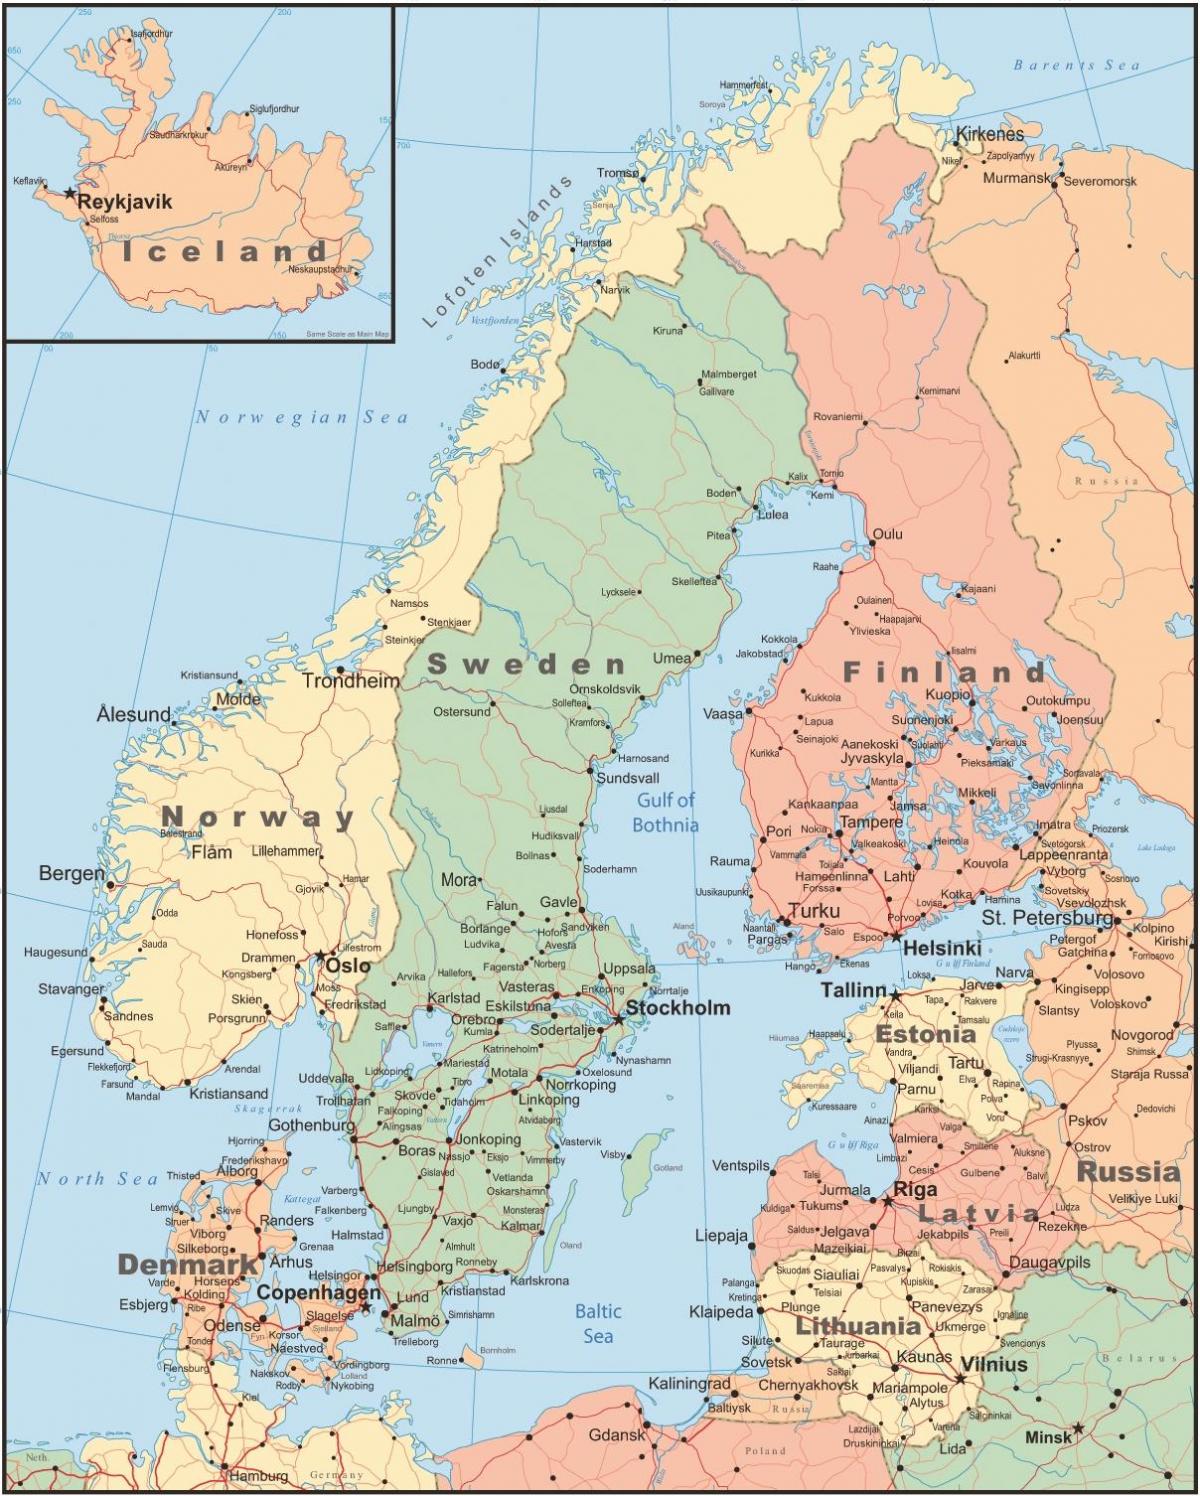 کا نقشہ فن لینڈ اور ارد گرد کے ممالک